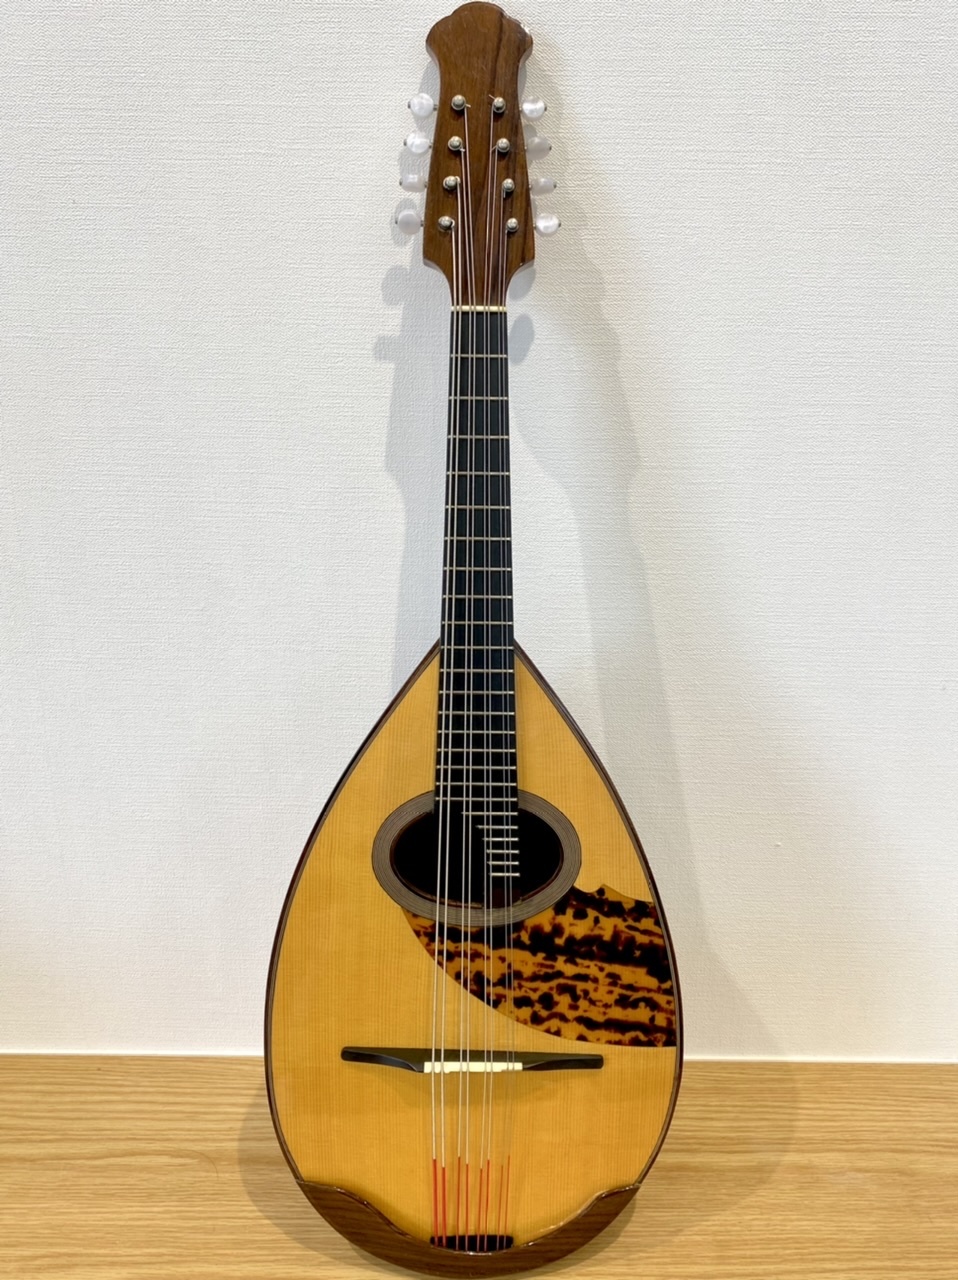 マンドリン 石川捷二郎 1976年作品 No60 - 弦楽器、ギター